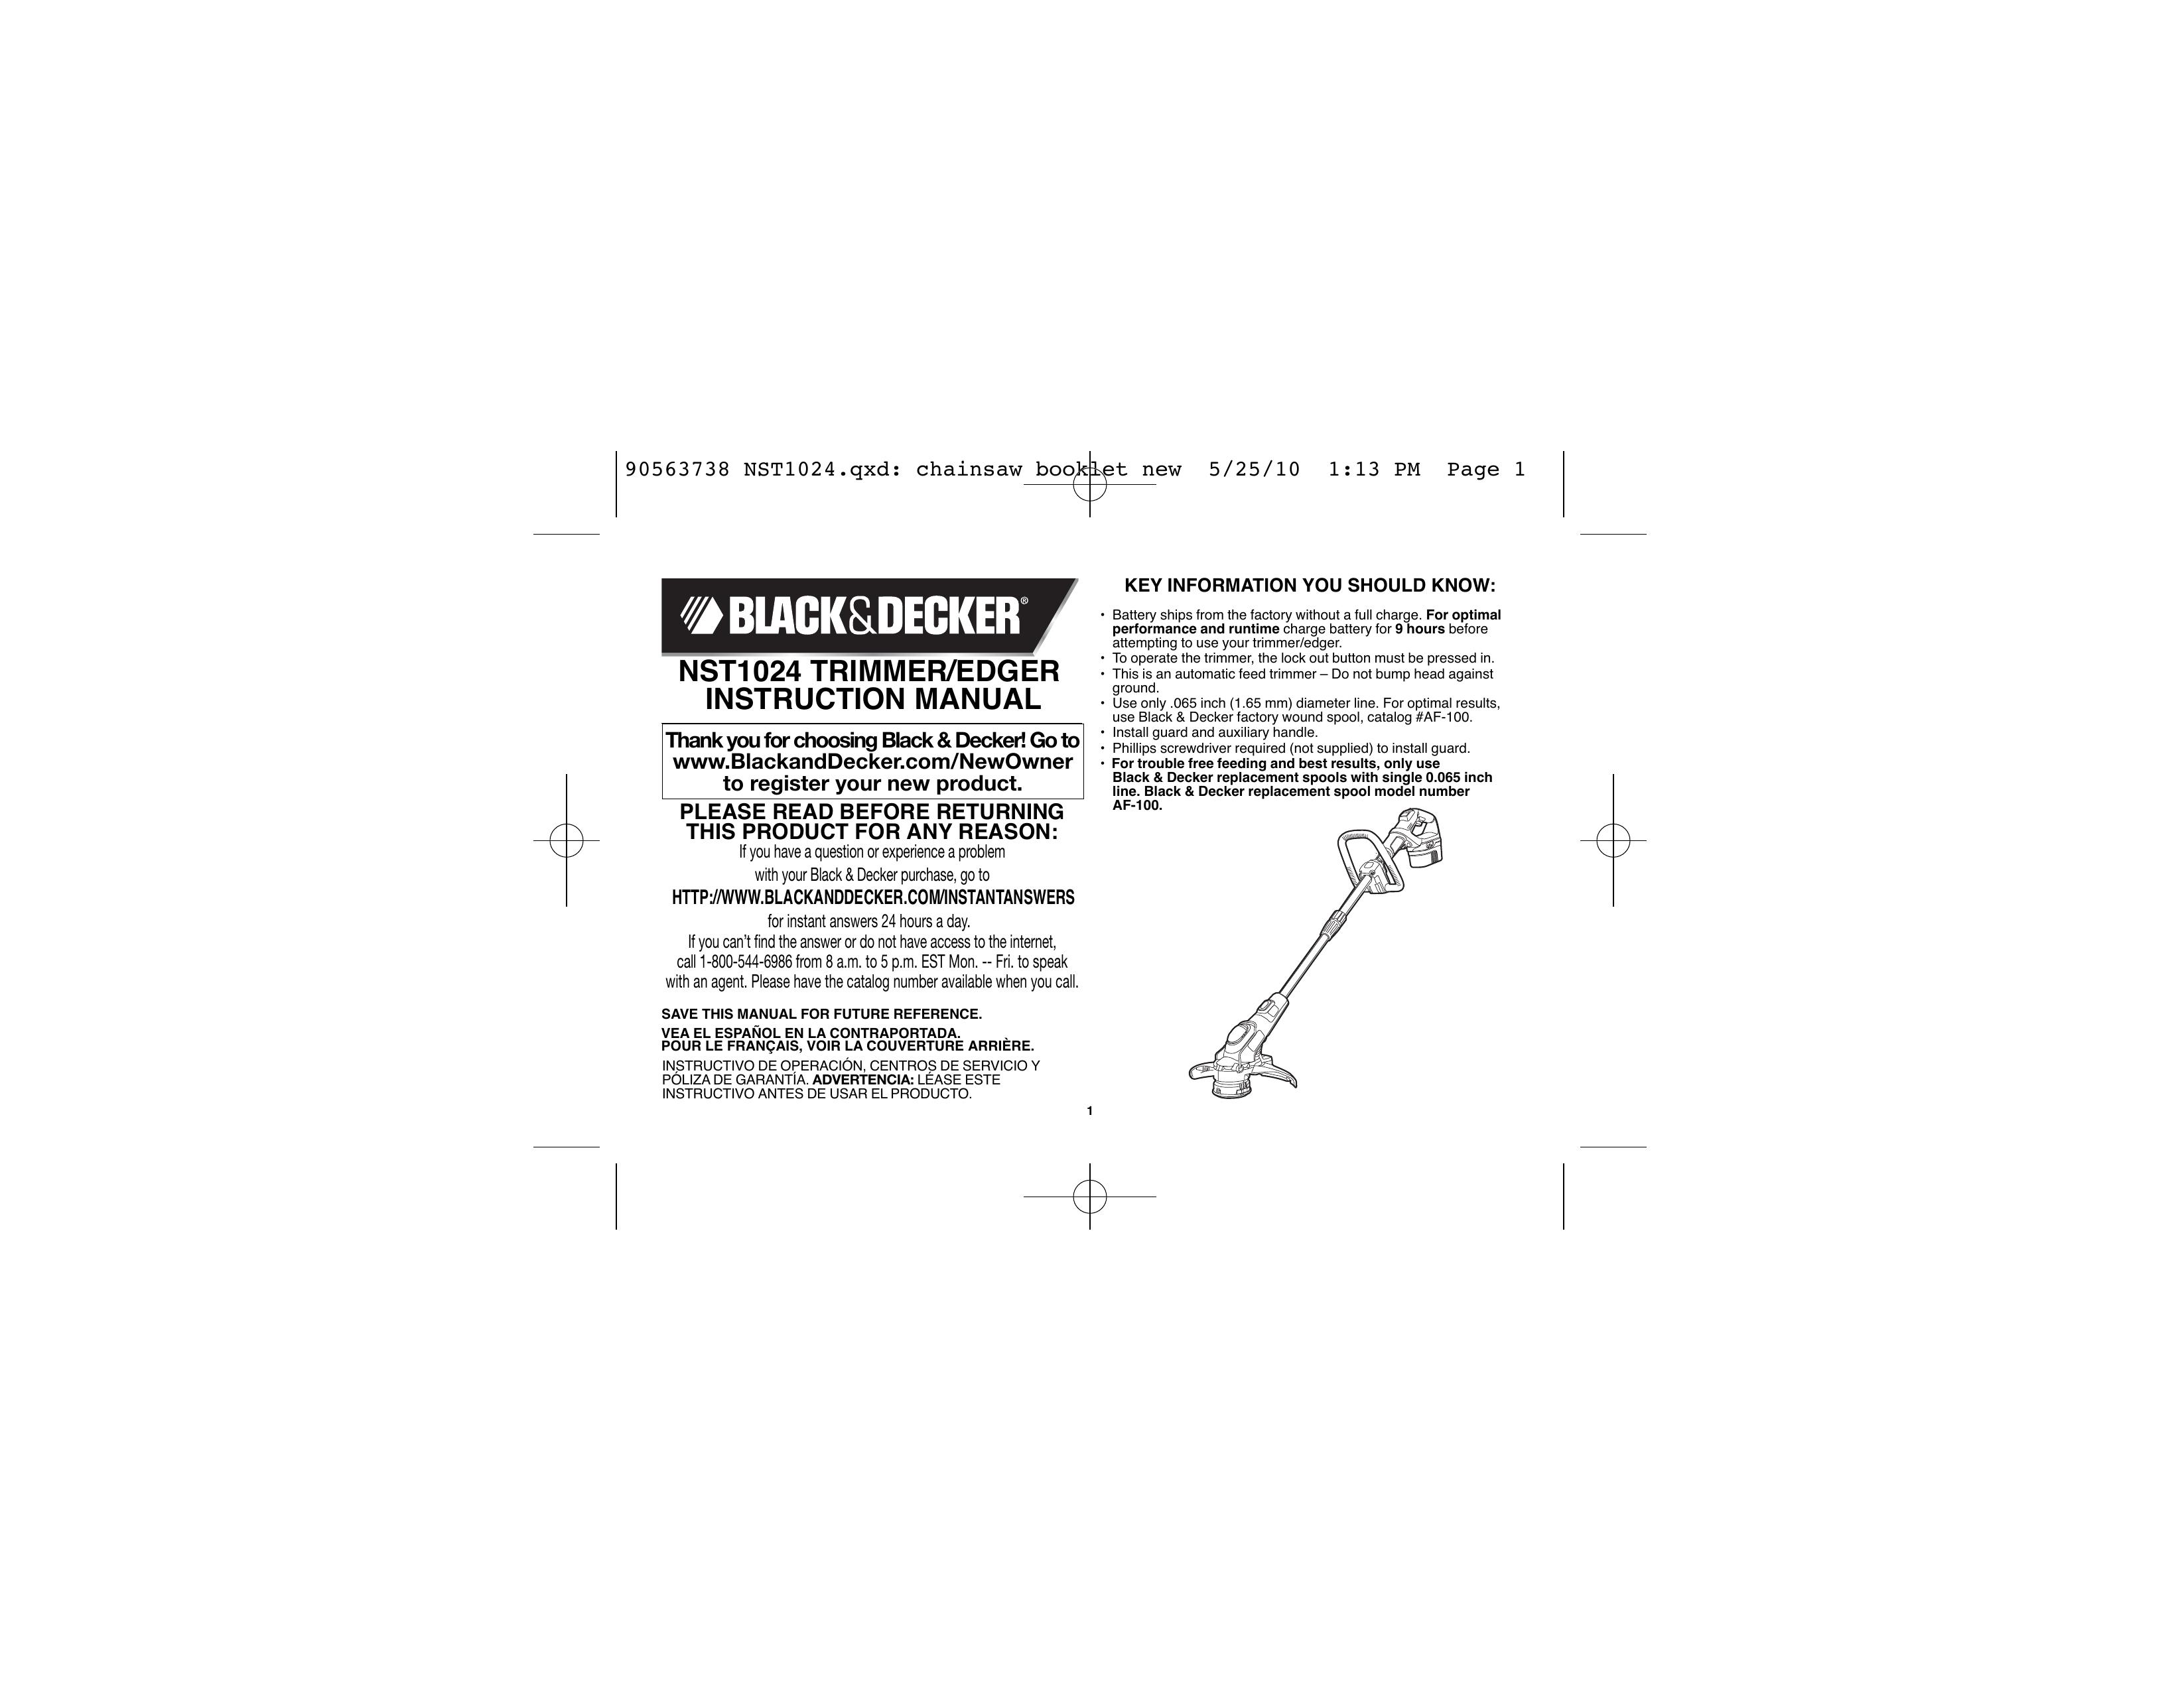 Black & Decker AF-100 Trimmer User Manual